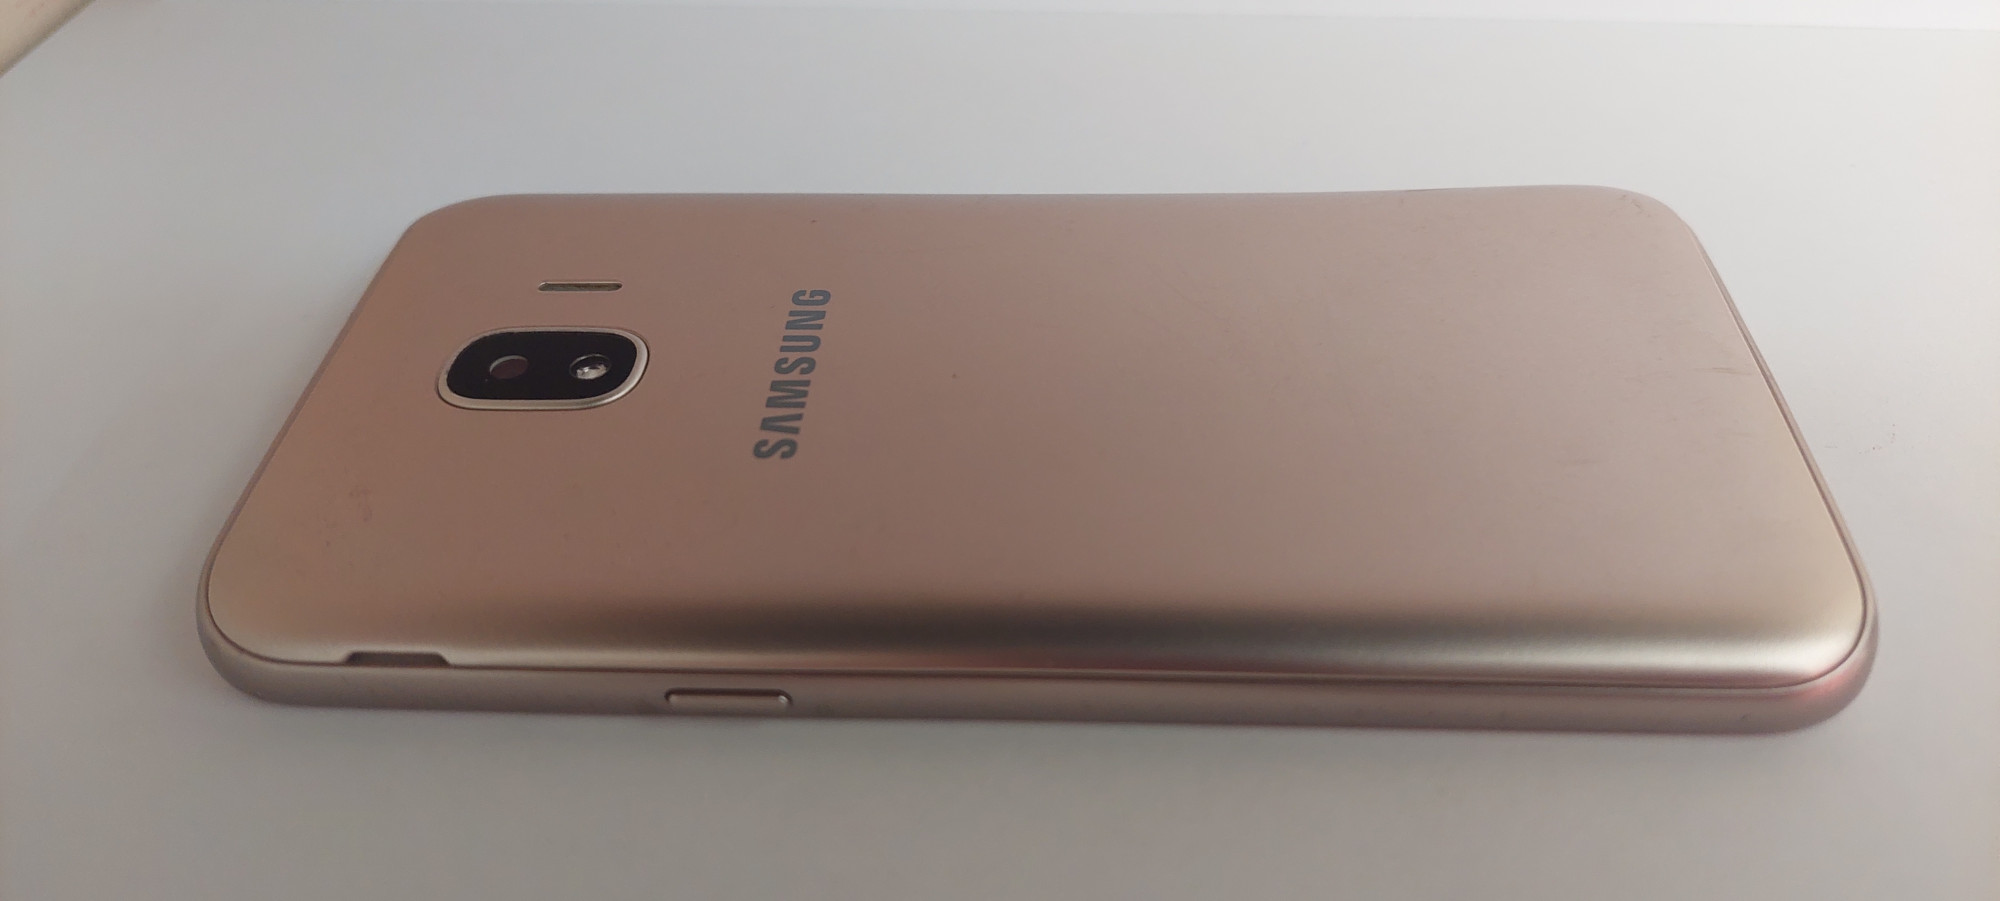 Samsung Galaxy J2 2018 (SM-J250F) 1/16Gb 2